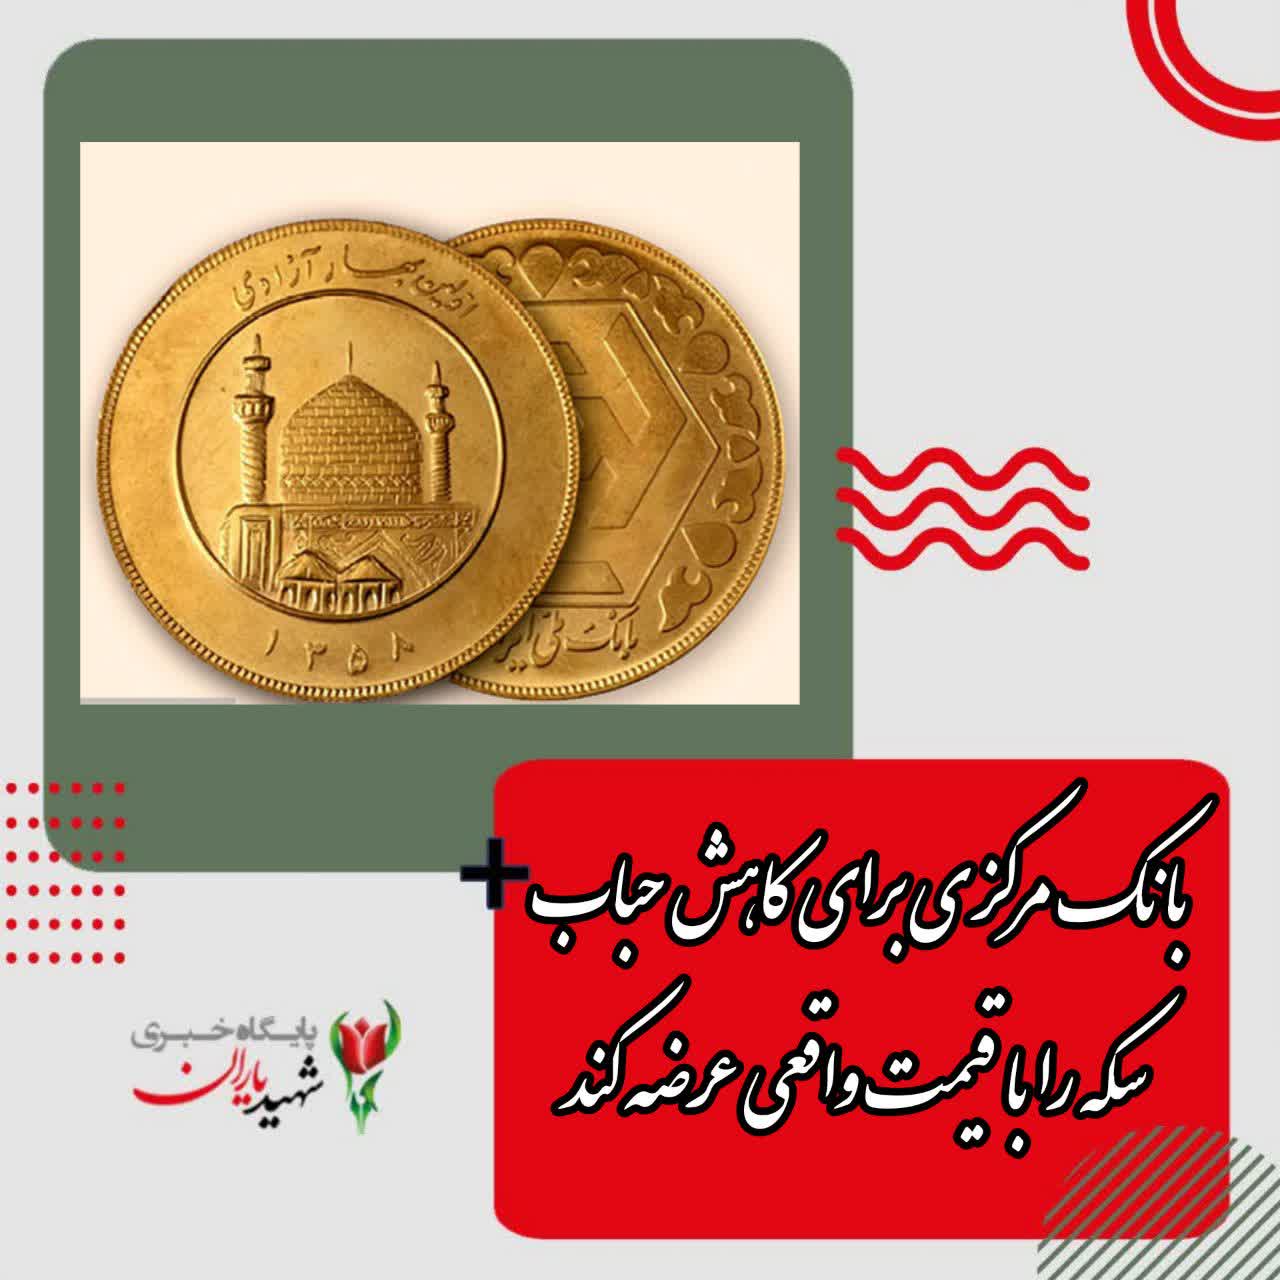 بانک مرکزی برای کاهش حباب سکه را با قیمت واقعی عرضه کند.